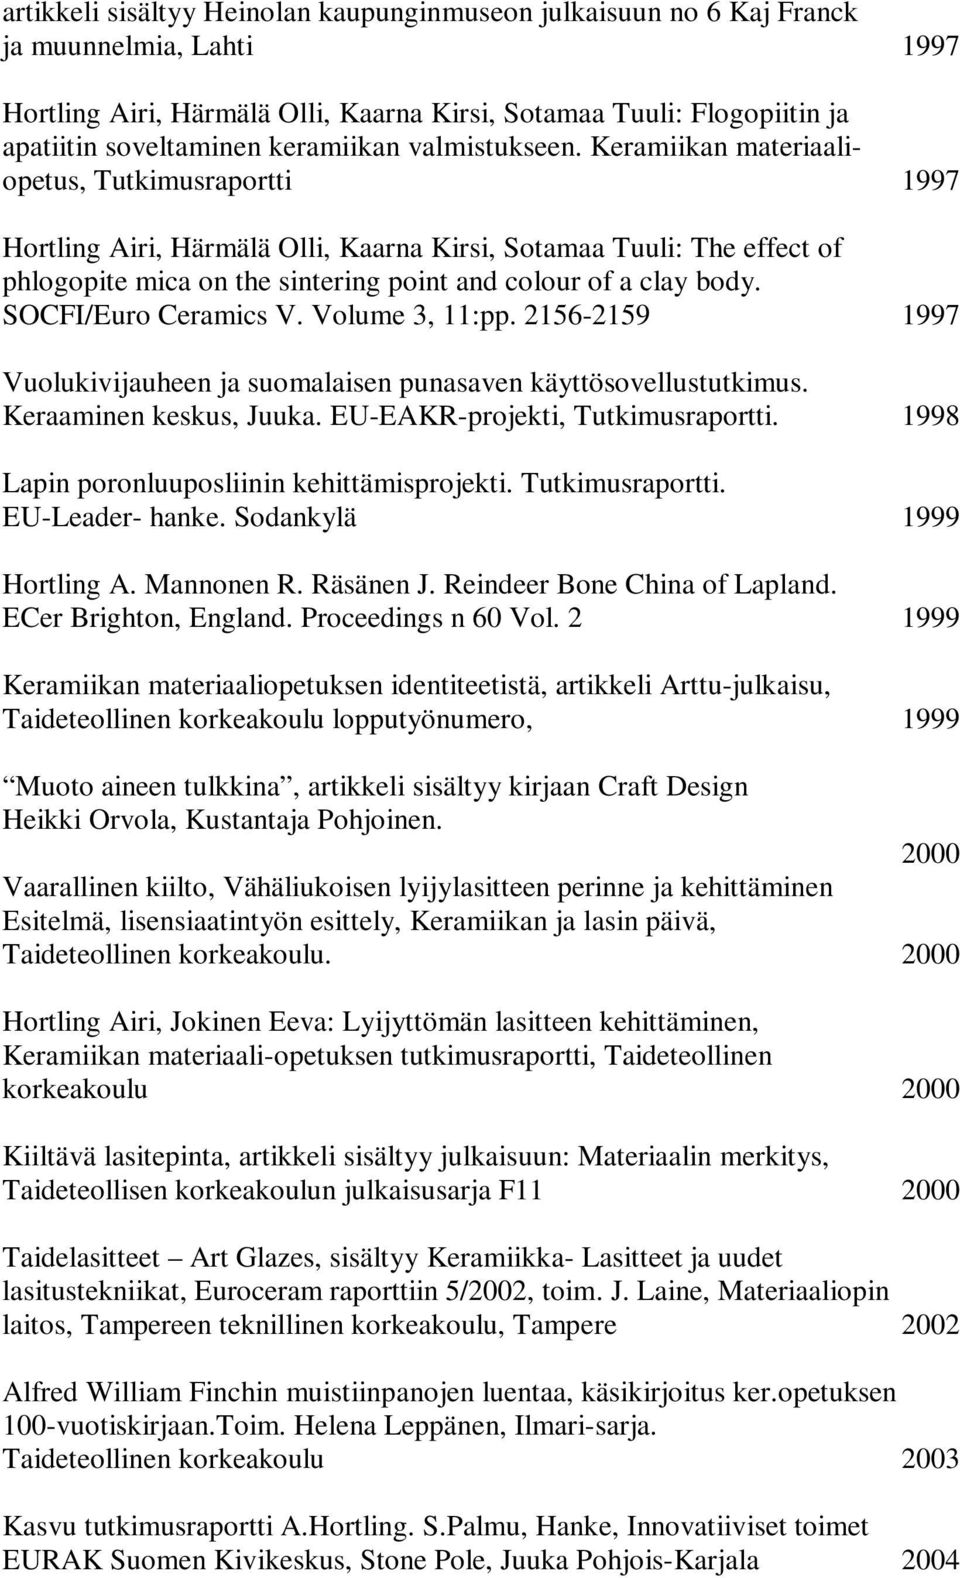 Keramiikan materiaaliopetus, Tutkimusraportti 1997 Hortling Airi, Härmälä Olli, Kaarna Kirsi, Sotamaa Tuuli: The effect of phlogopite mica on the sintering point and colour of a clay body.